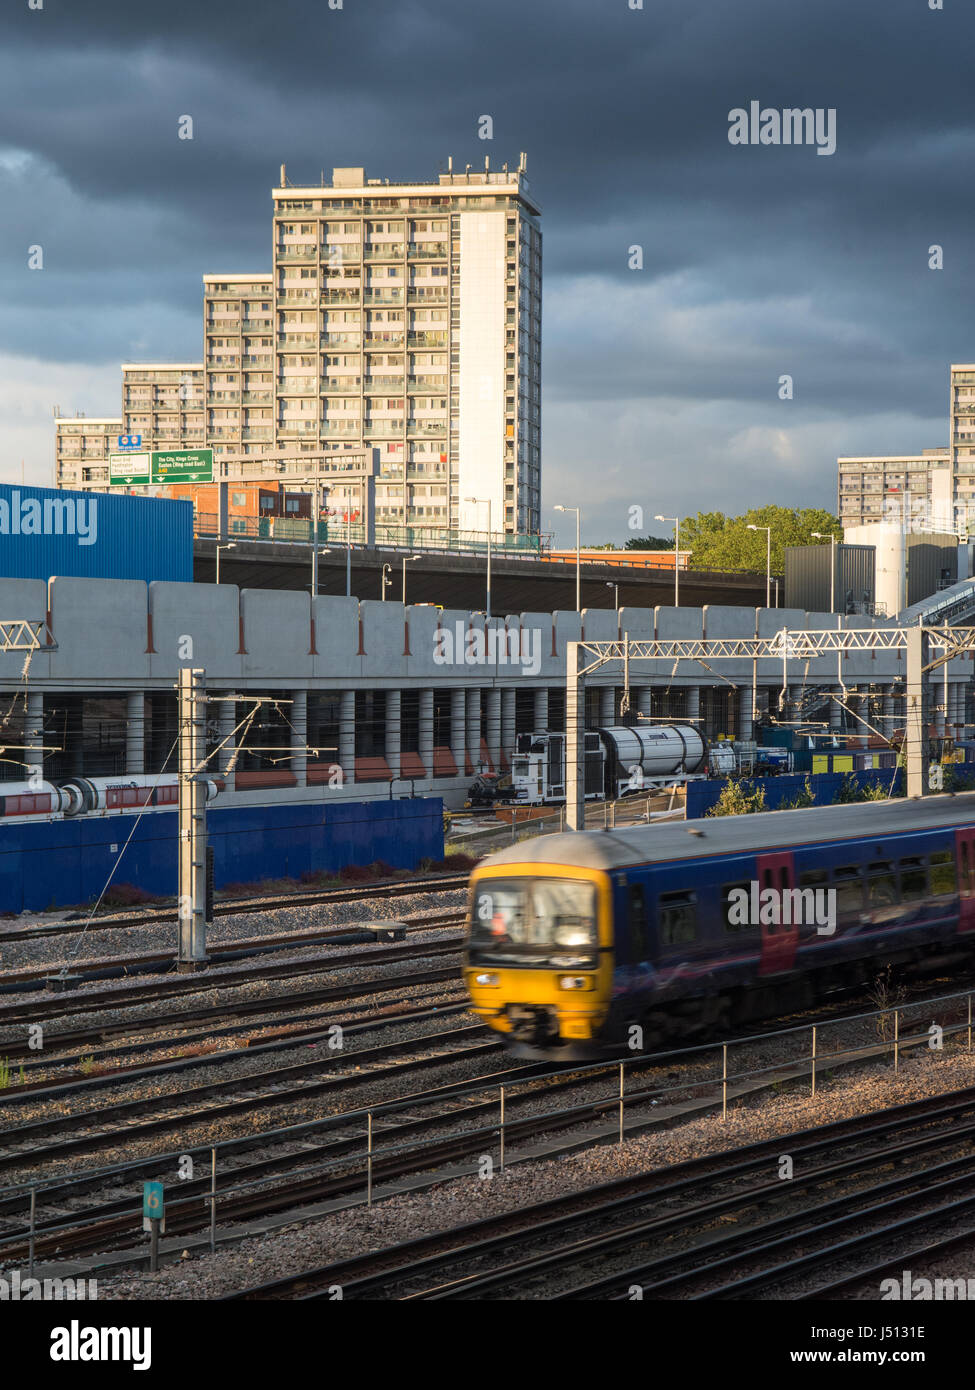 Londres, Angleterre, Royaume Uni - 21 juin 2016 : des trains de banlieue sur la ligne principale au Great Western Royal Oak près de Paddington dans l'ouest de Londres. Banque D'Images